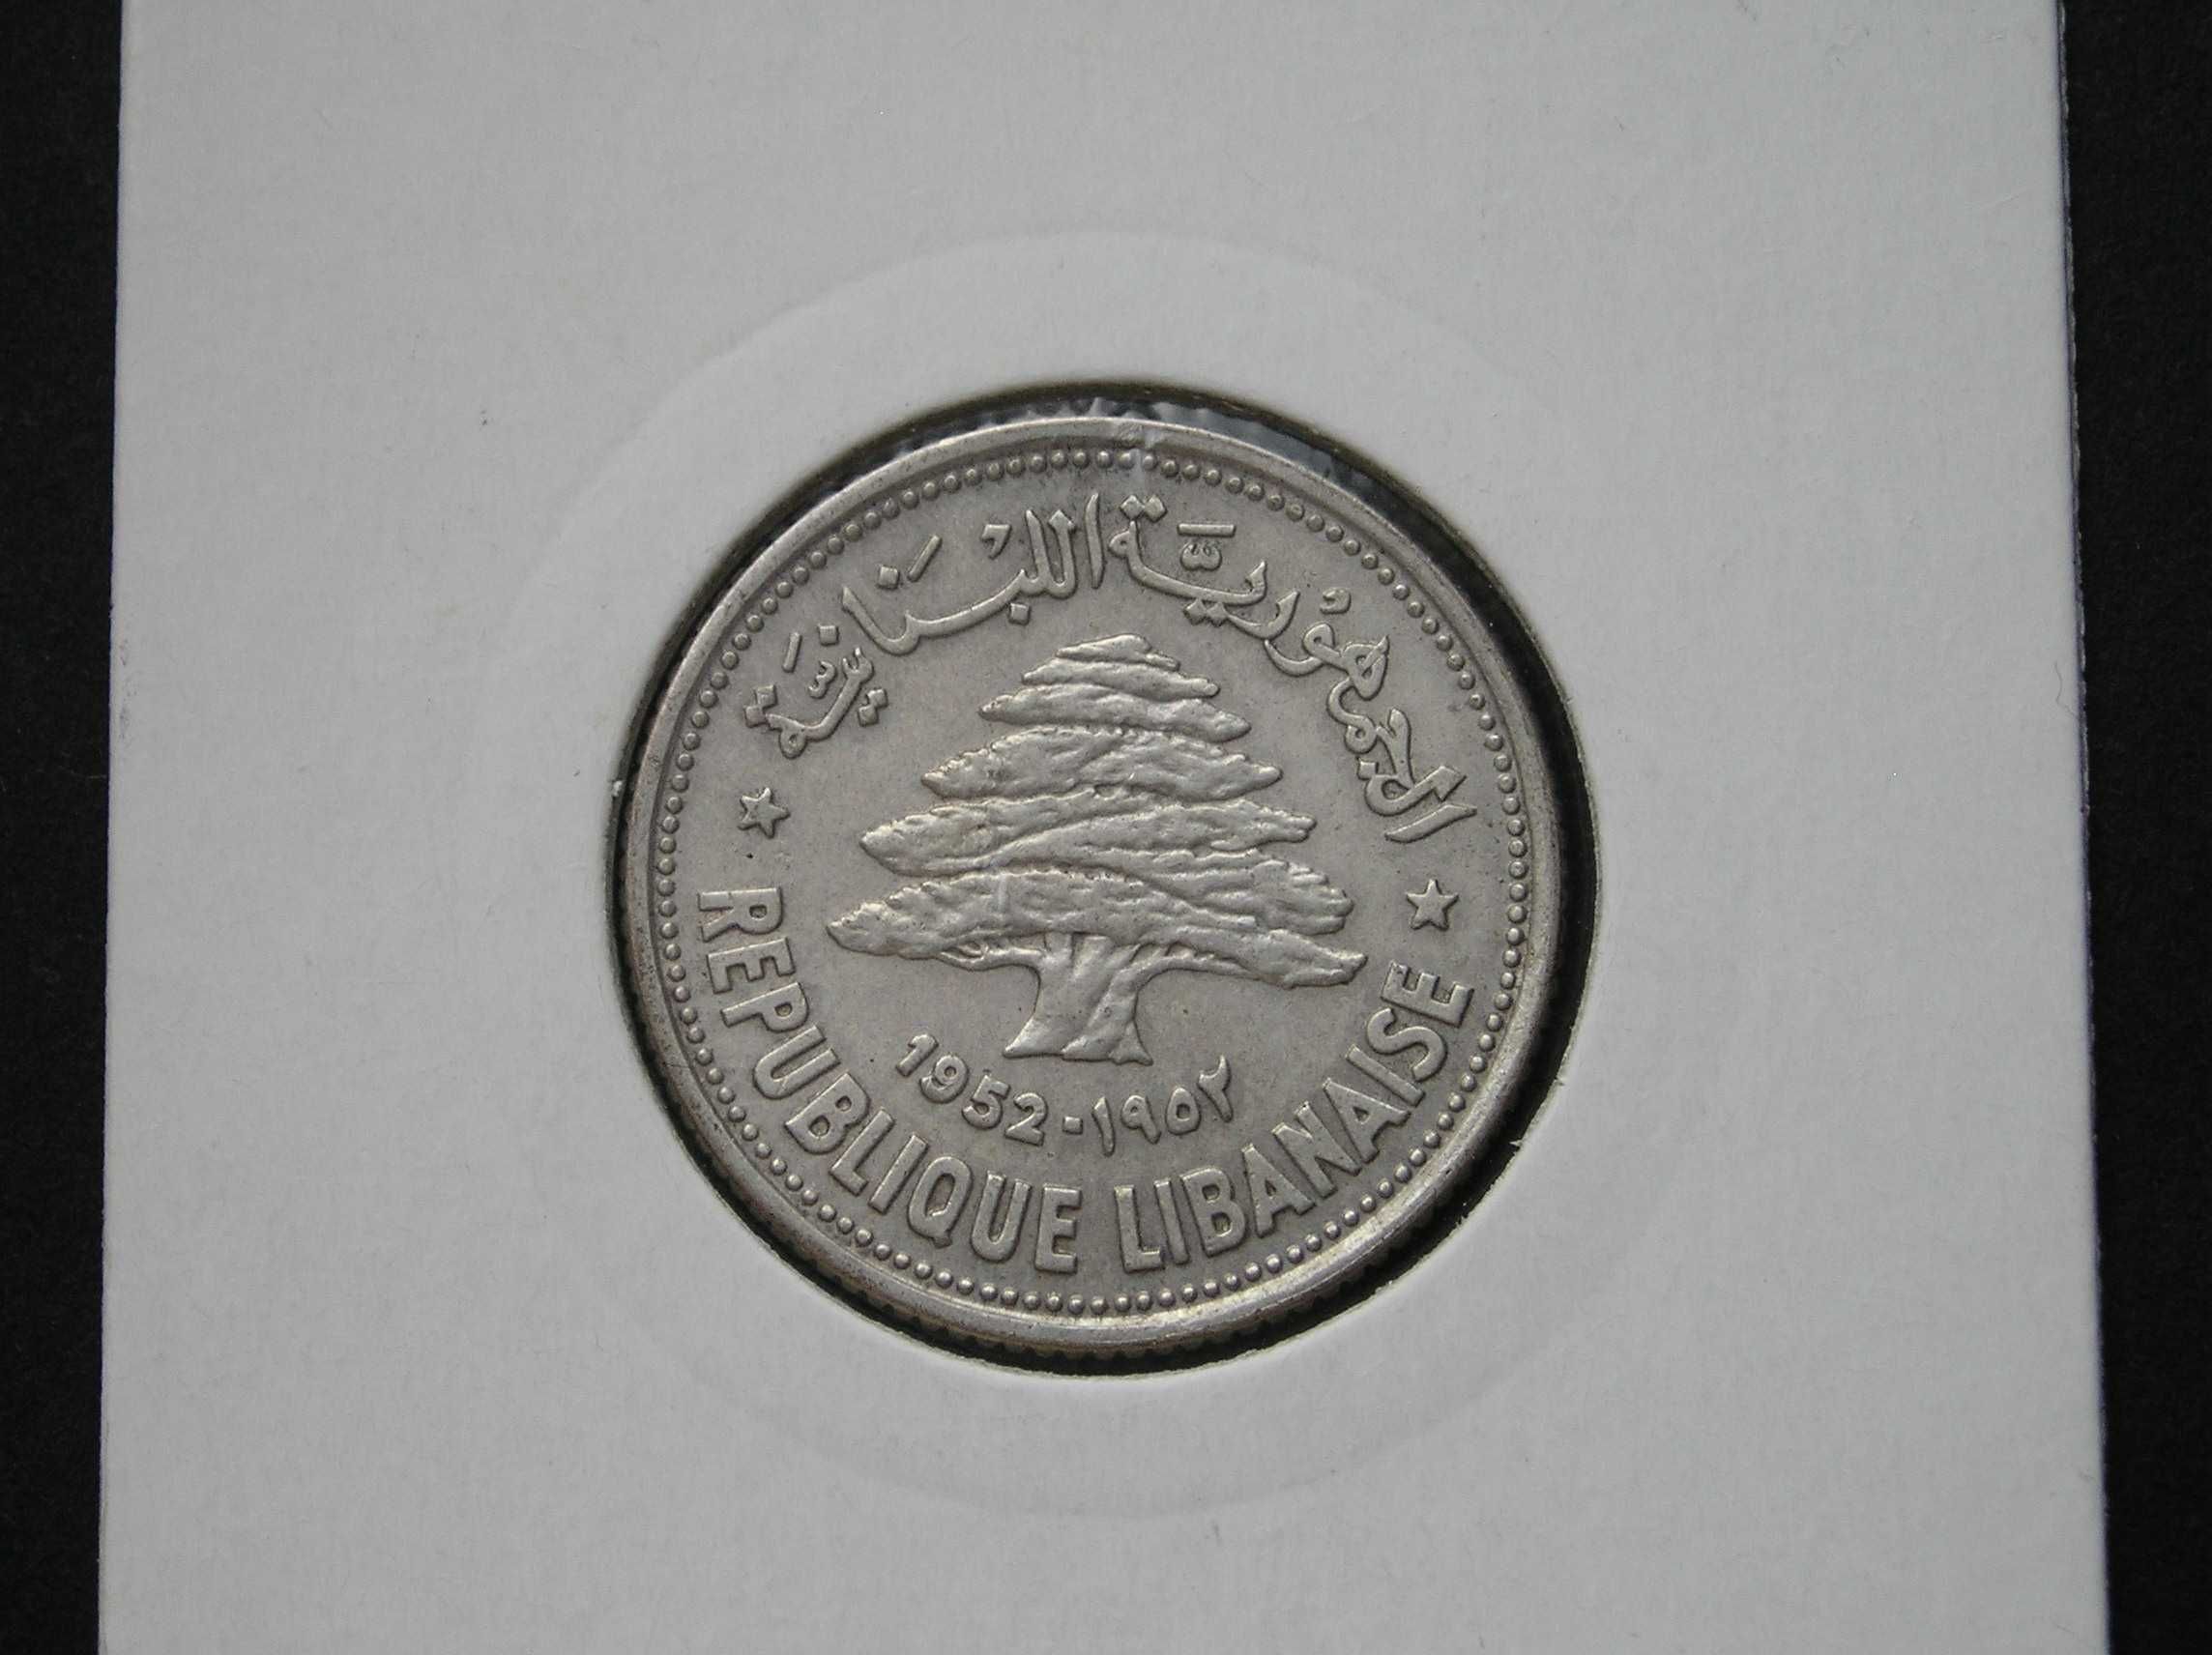 Liban 50 piastrów 1952 - srebro - w holderze